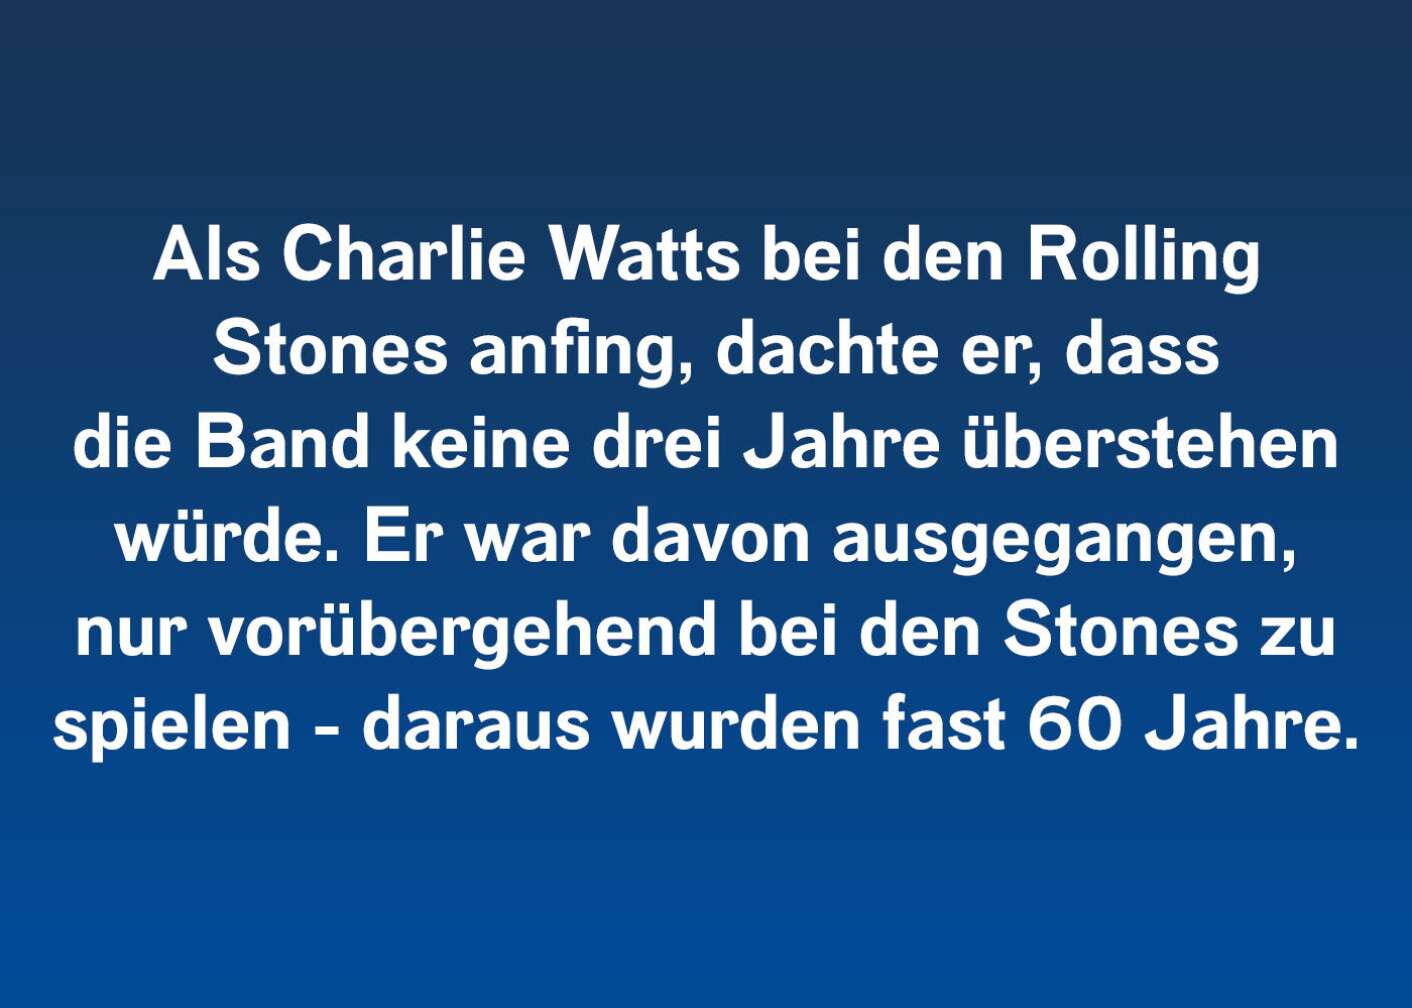 Fakten über Charlie Watts